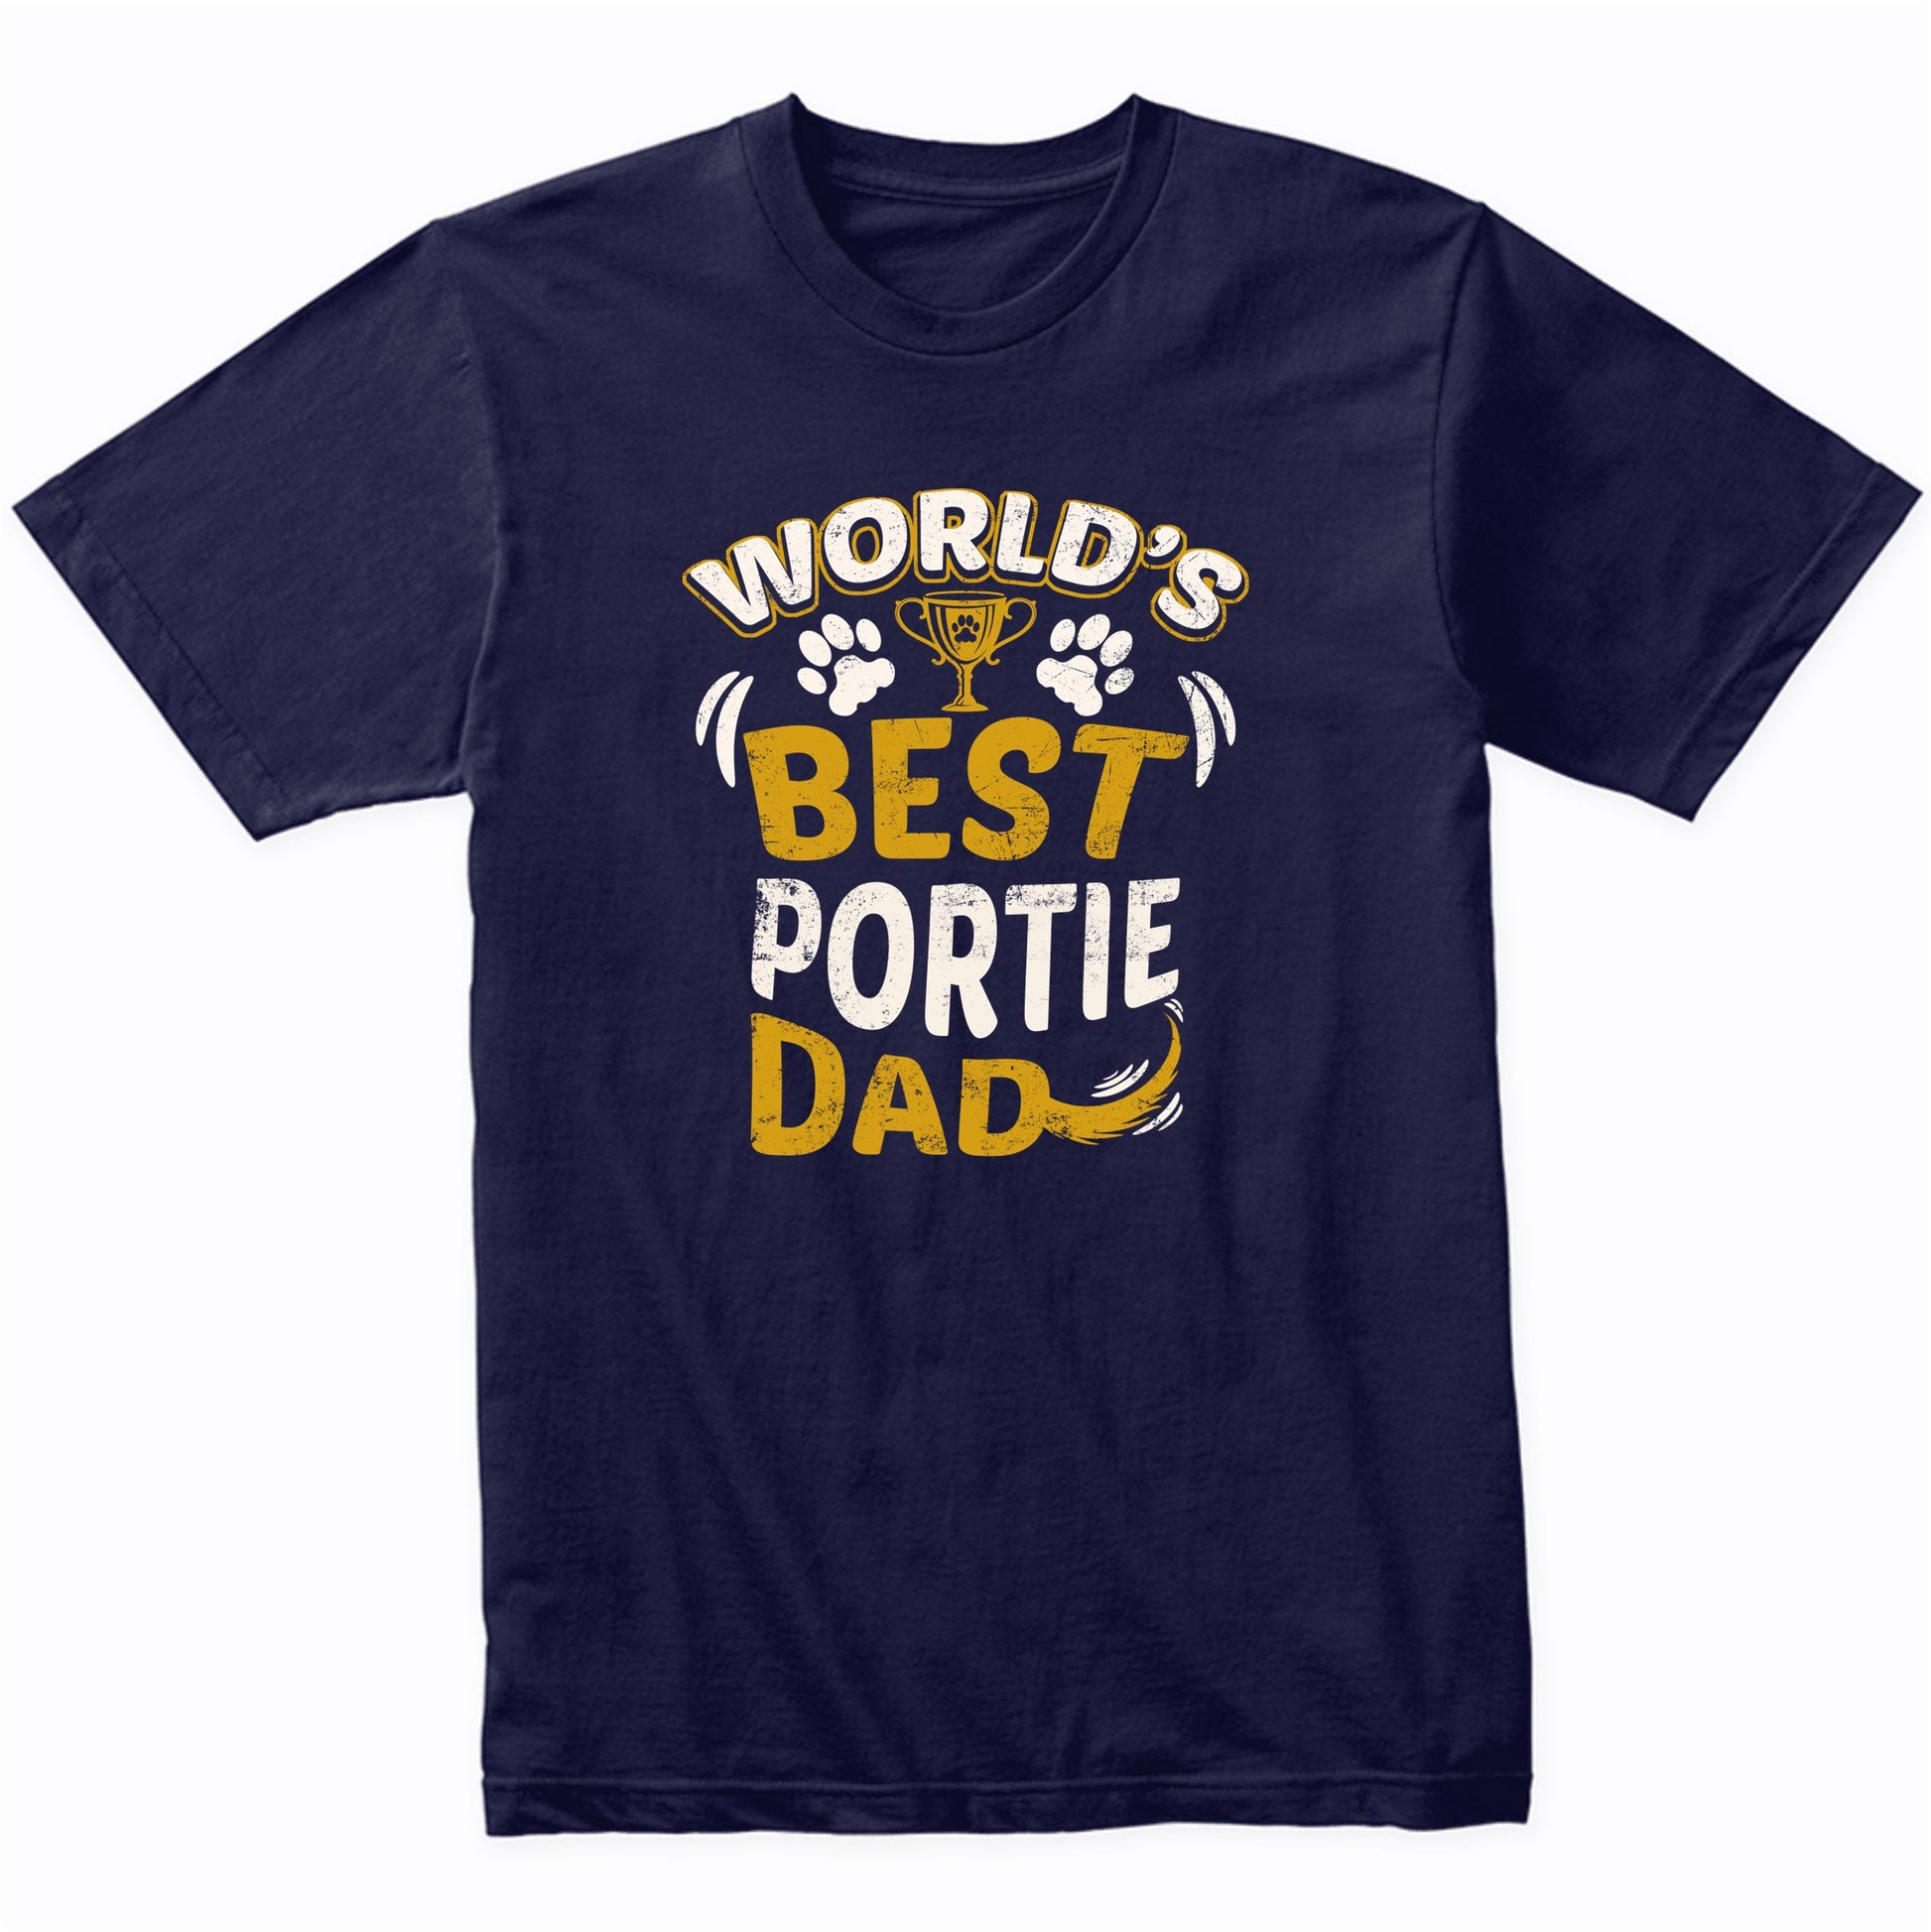 World's Best Portie Dad Graphic T-Shirt